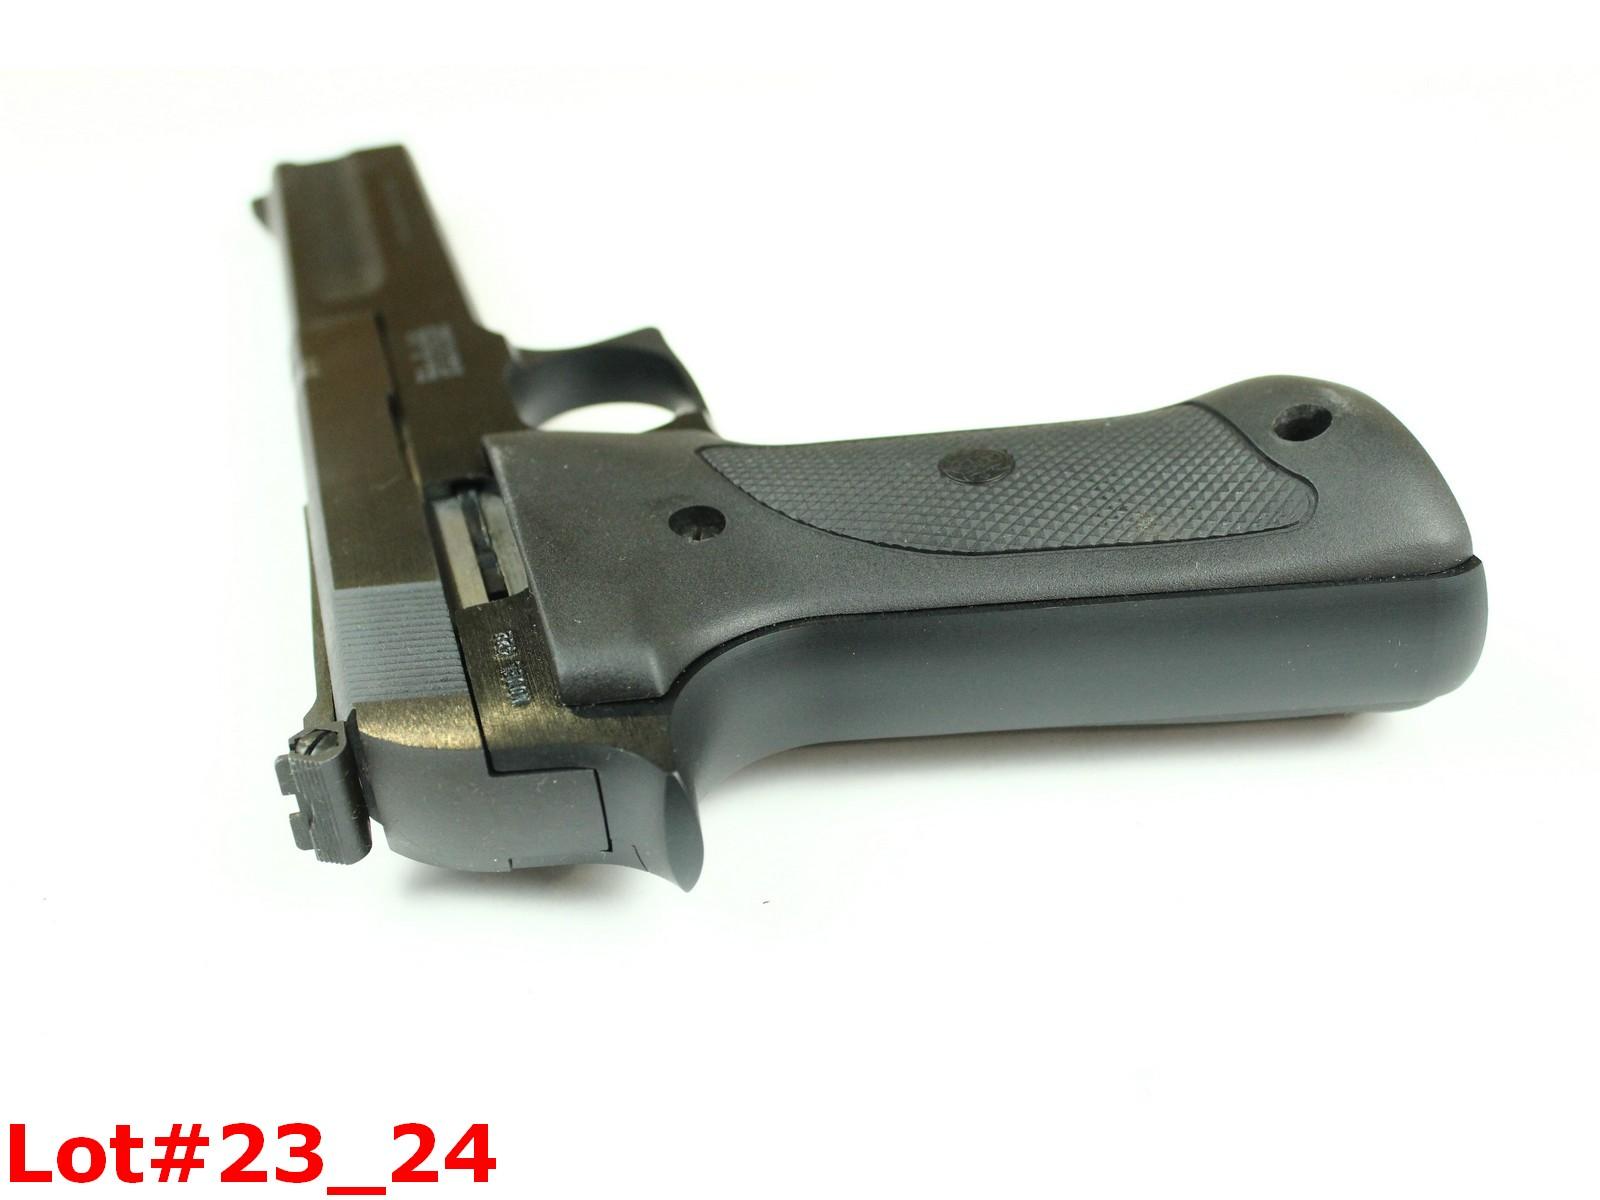 S&W Model 422 22LR Caliber Pistol